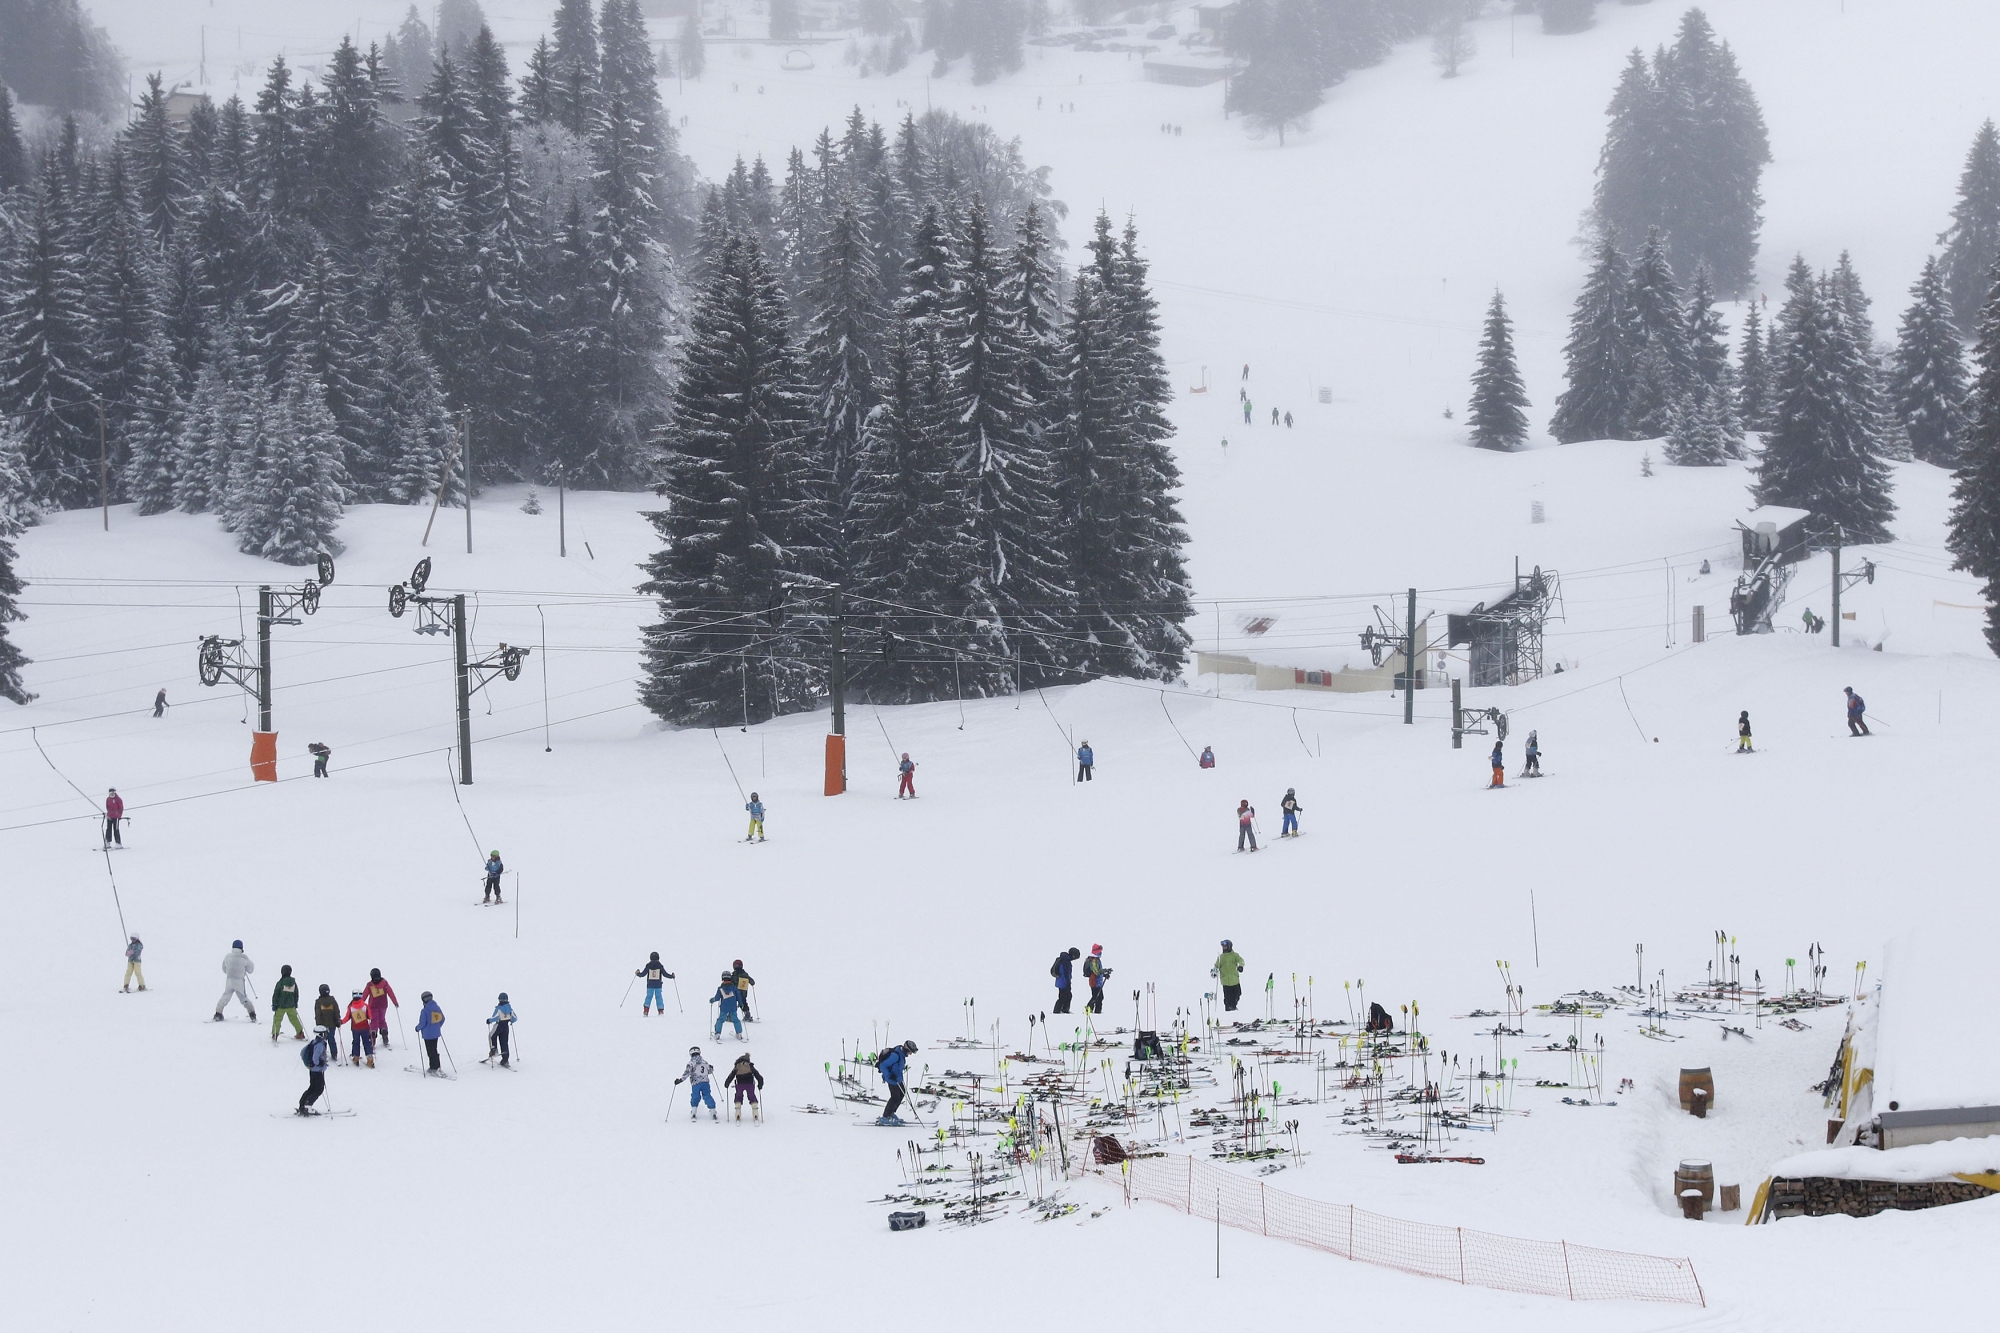 Les skieurs ont bénéficié de conditions d’enneigement exceptionnelles. Reste à moderniser le domaine pour optimiser sa fréquentation.